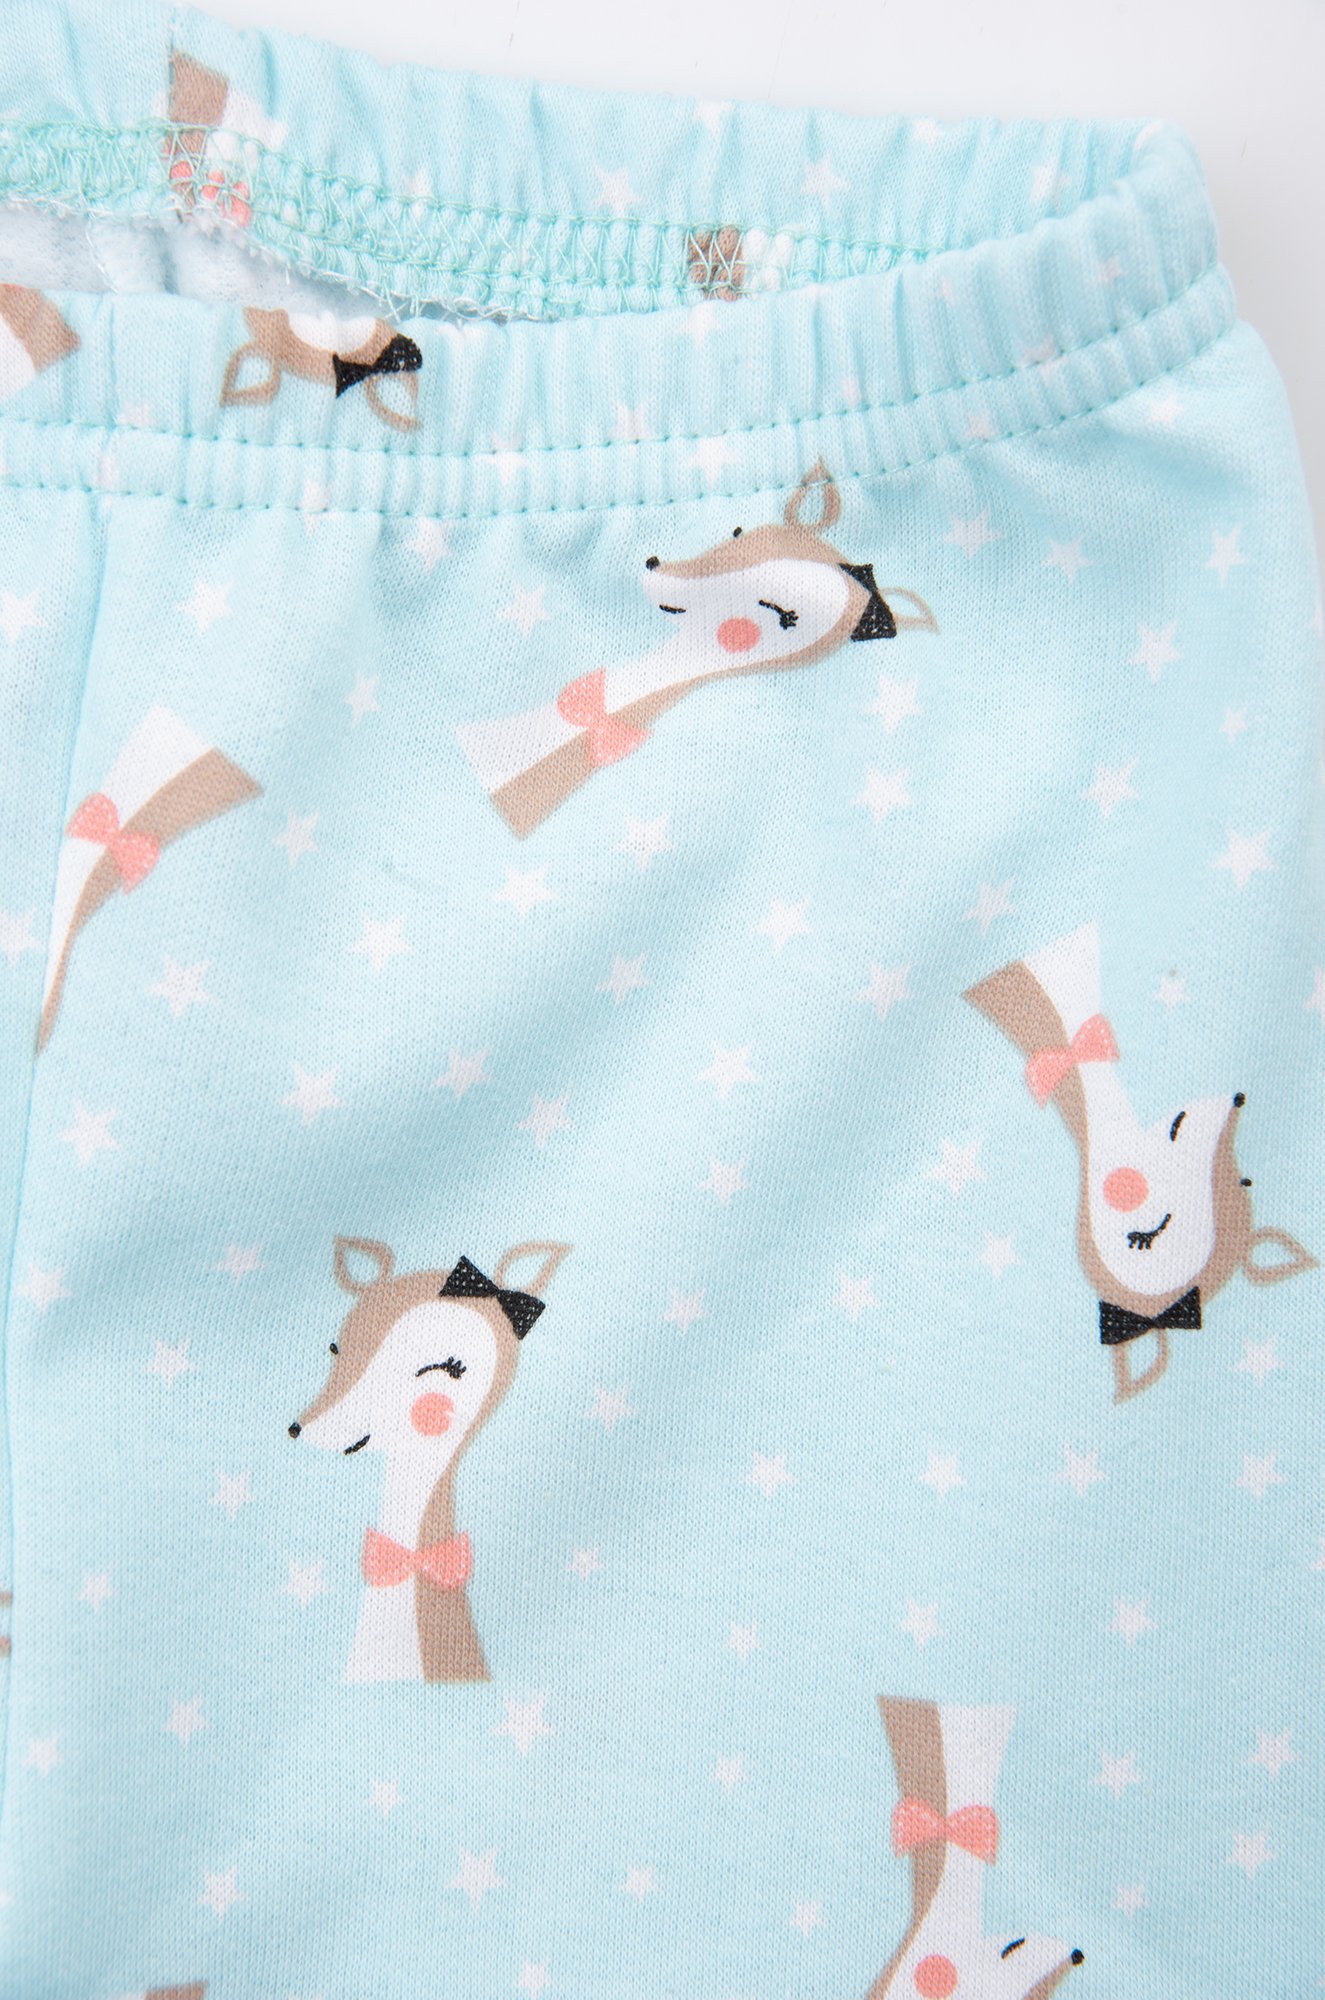 Пижама для девочки LE&LO